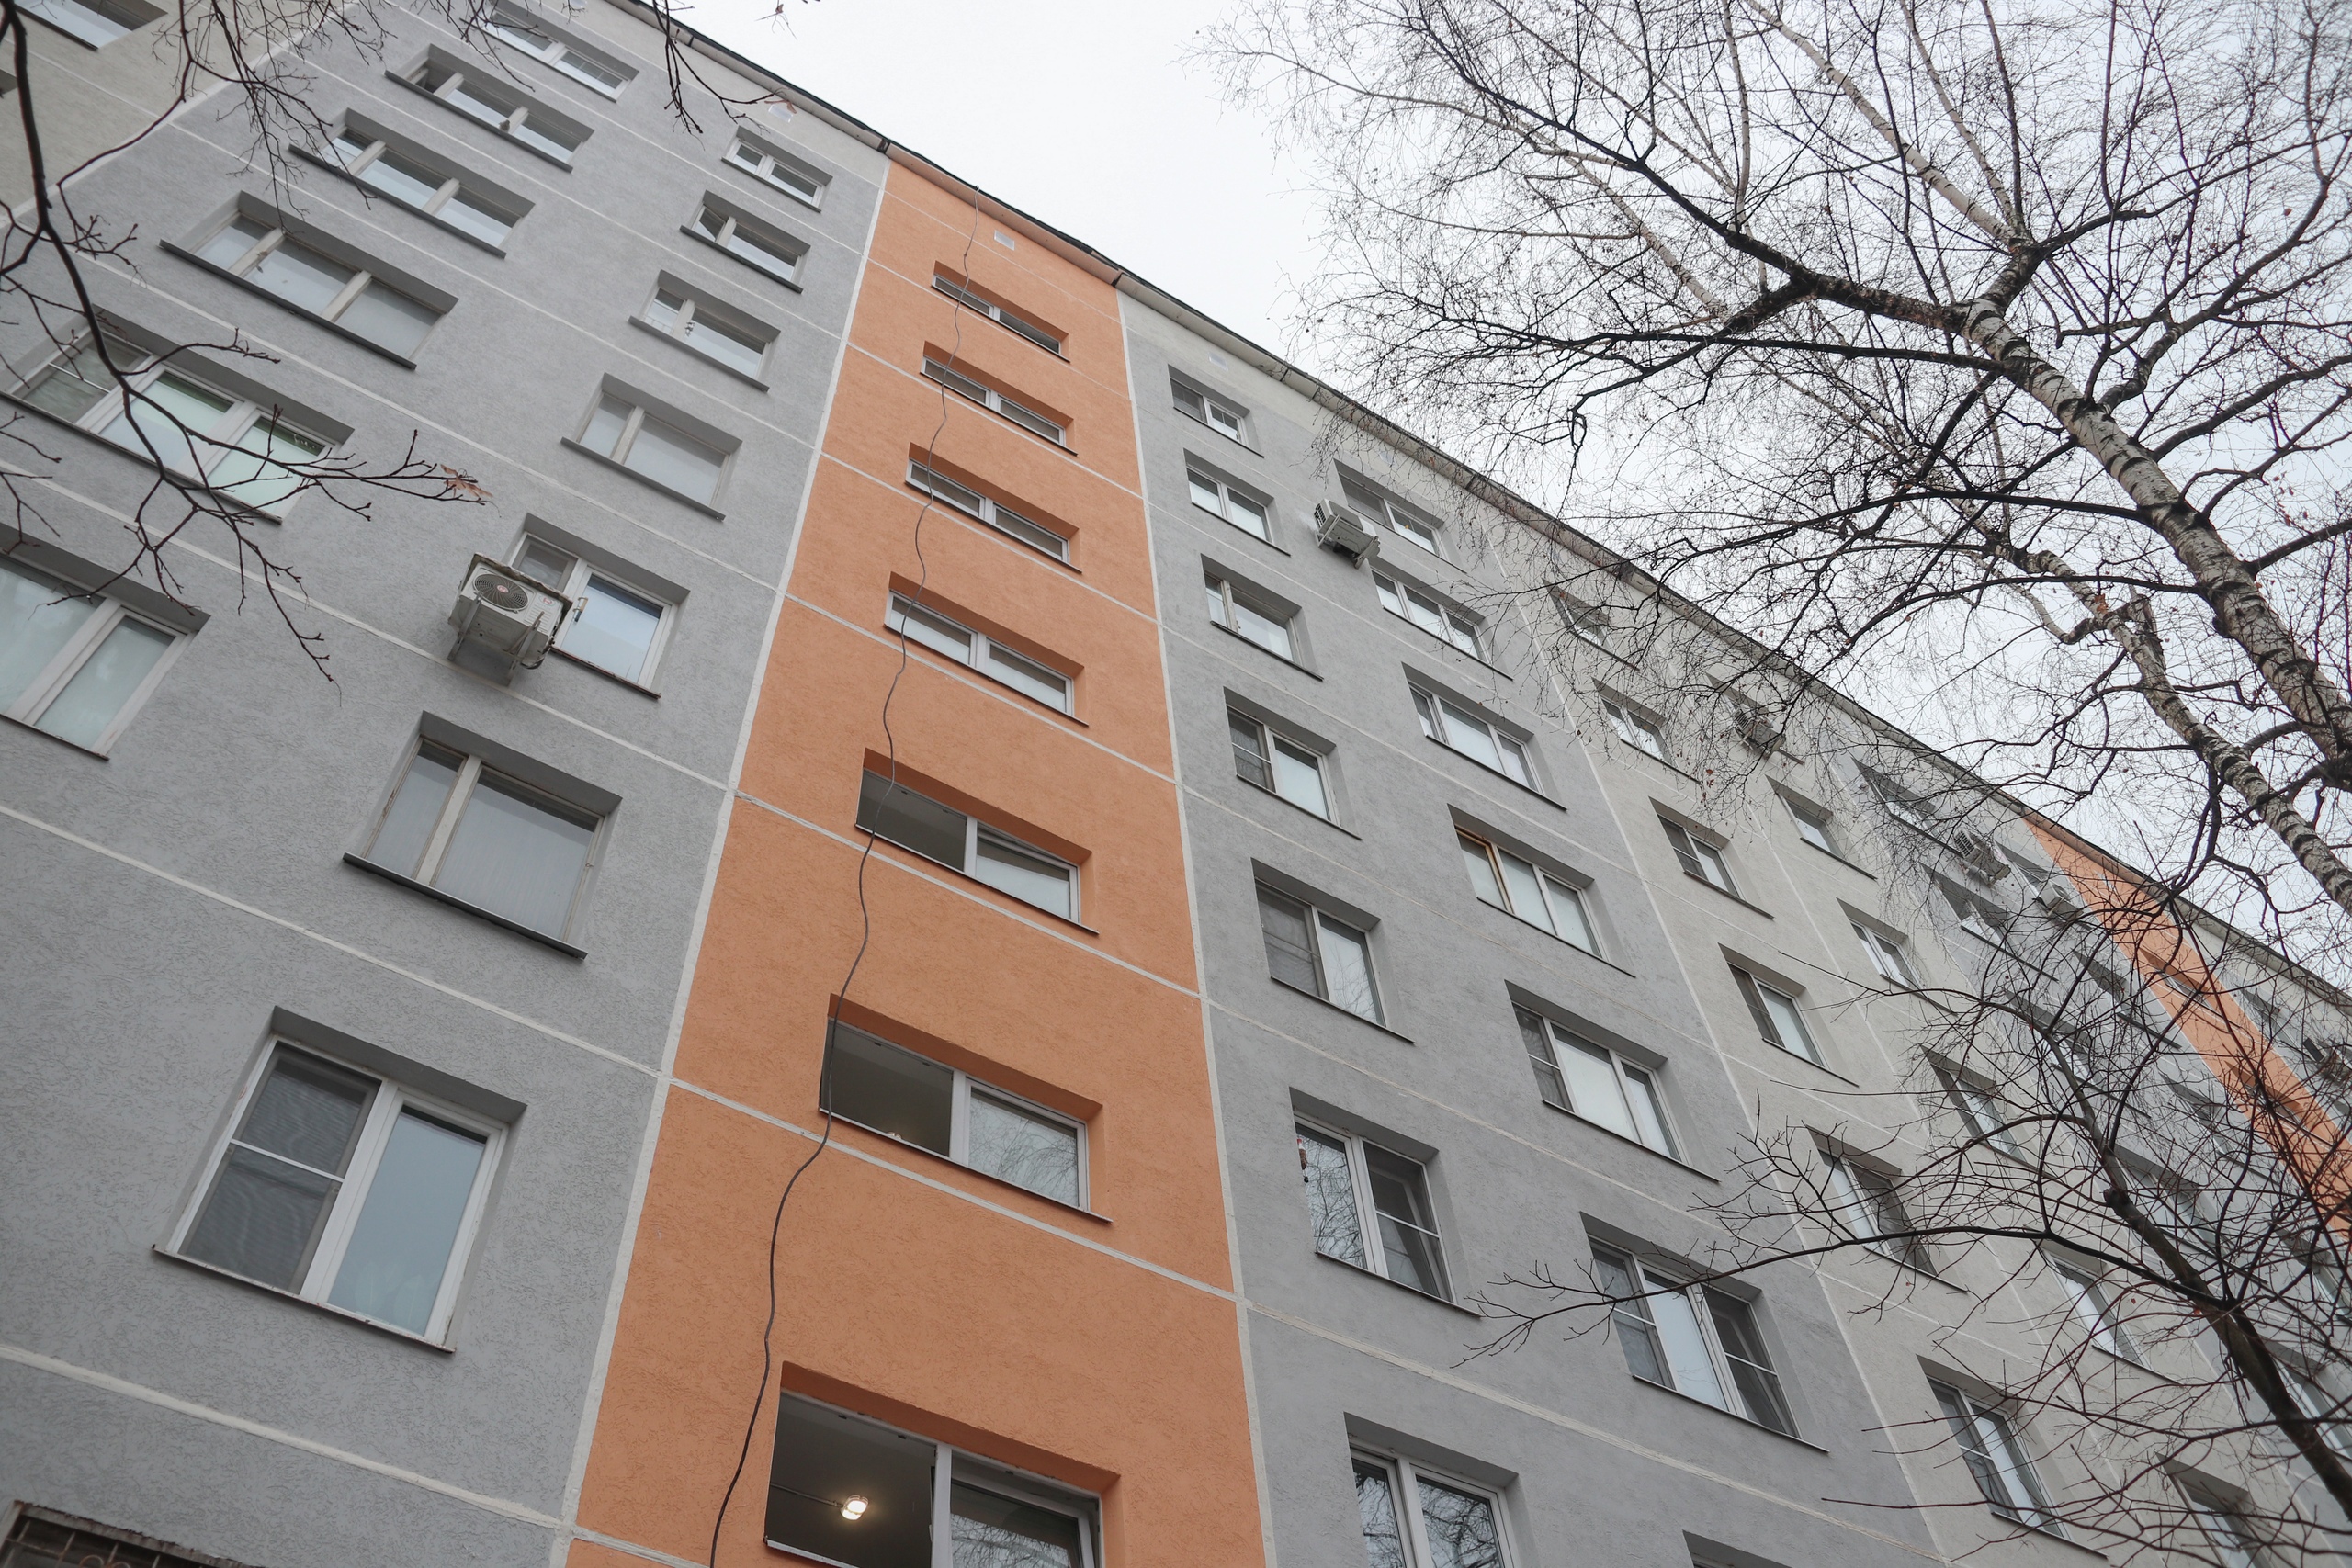 Мониторинг работ по капитальному ремонту провели в Орехове-Борисове Южном